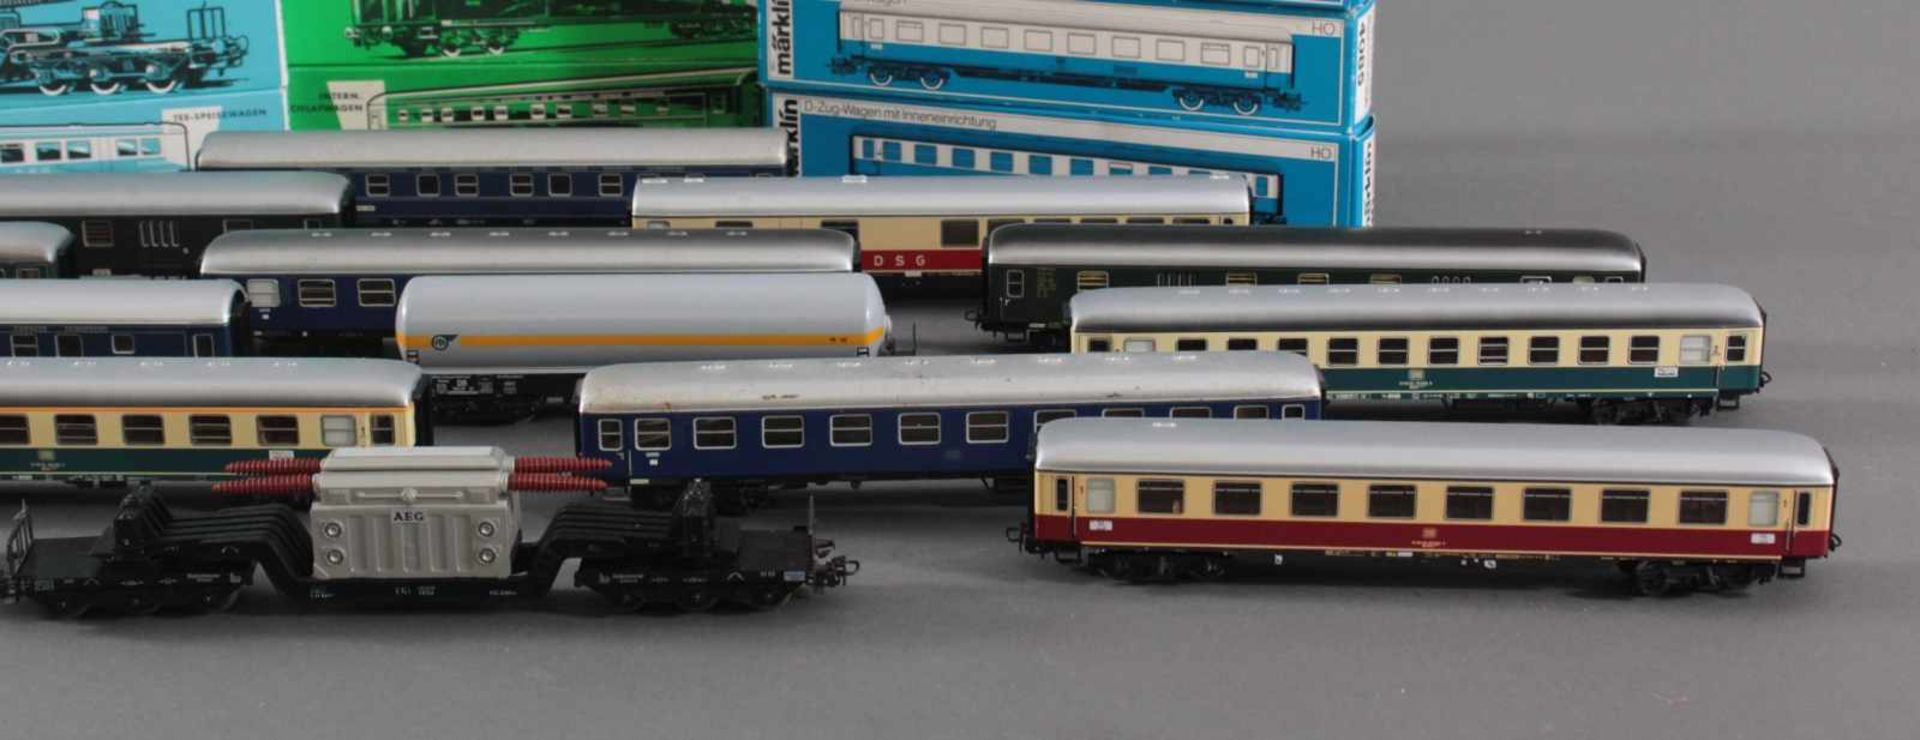 14 Märklin Güterwaggons in der Originalverpackung Spur H0Modellnummer 4044, 4064, 4052, 4617, - Image 3 of 4